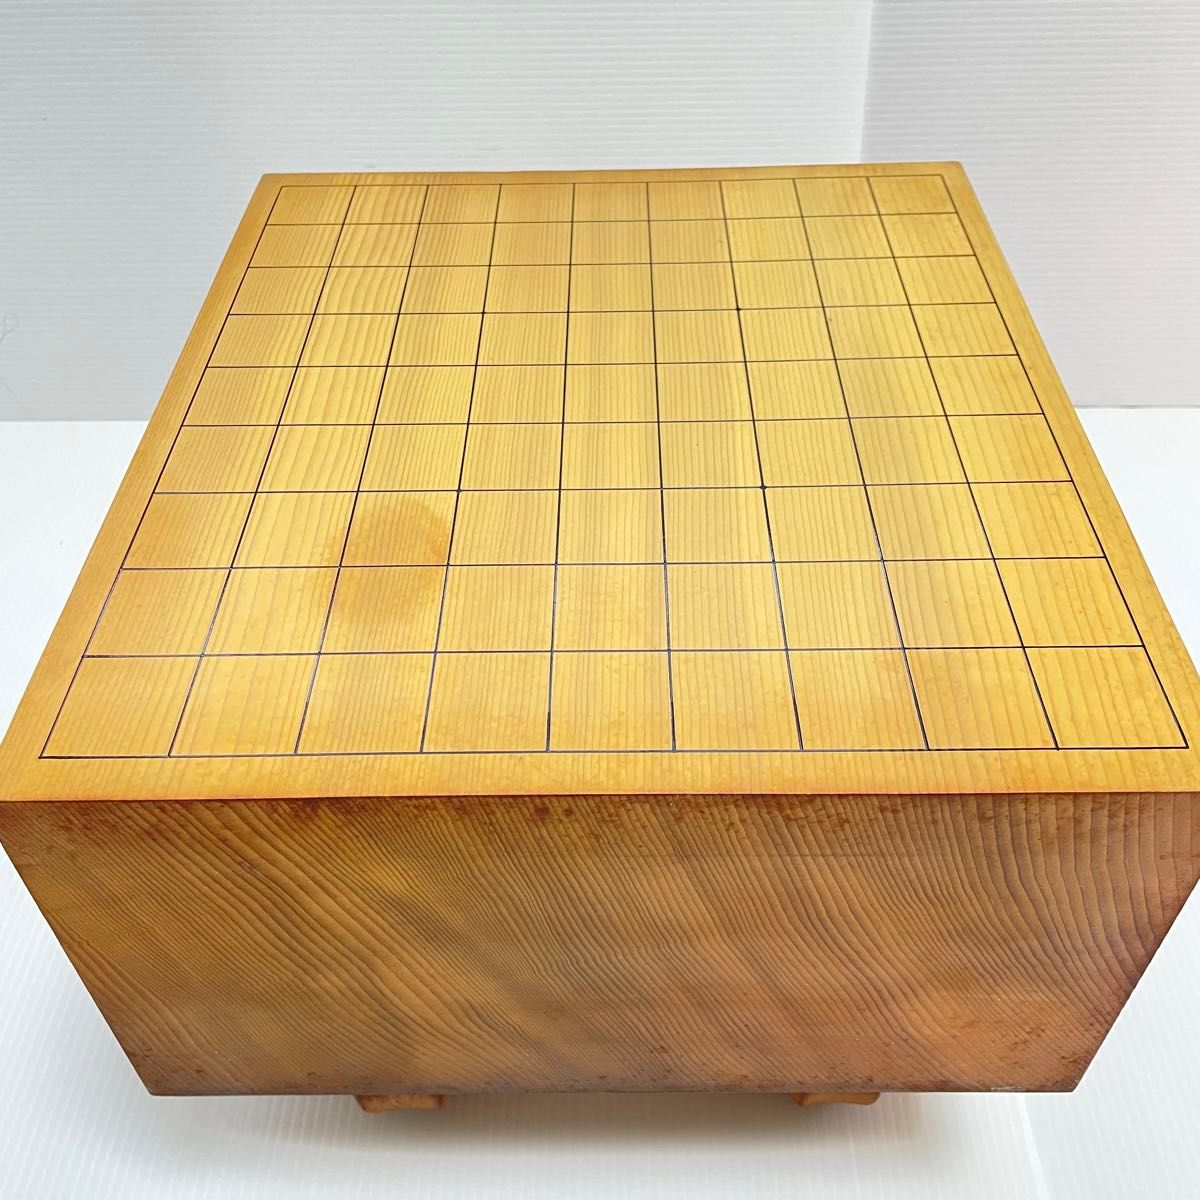 新榧 松印級 碁盤 天柾 柾目 5寸6分 囲碁 極厚 柾目 豪快な木目